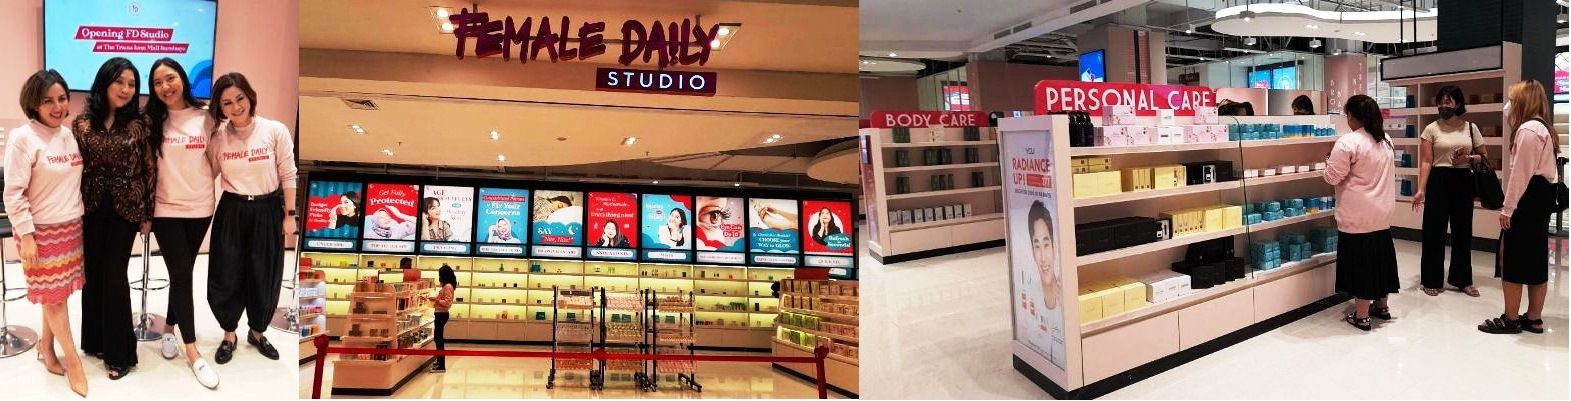 Female Daily Studio Tawarkan Beragam Produk & Brand Kecantikan dan Perawatan